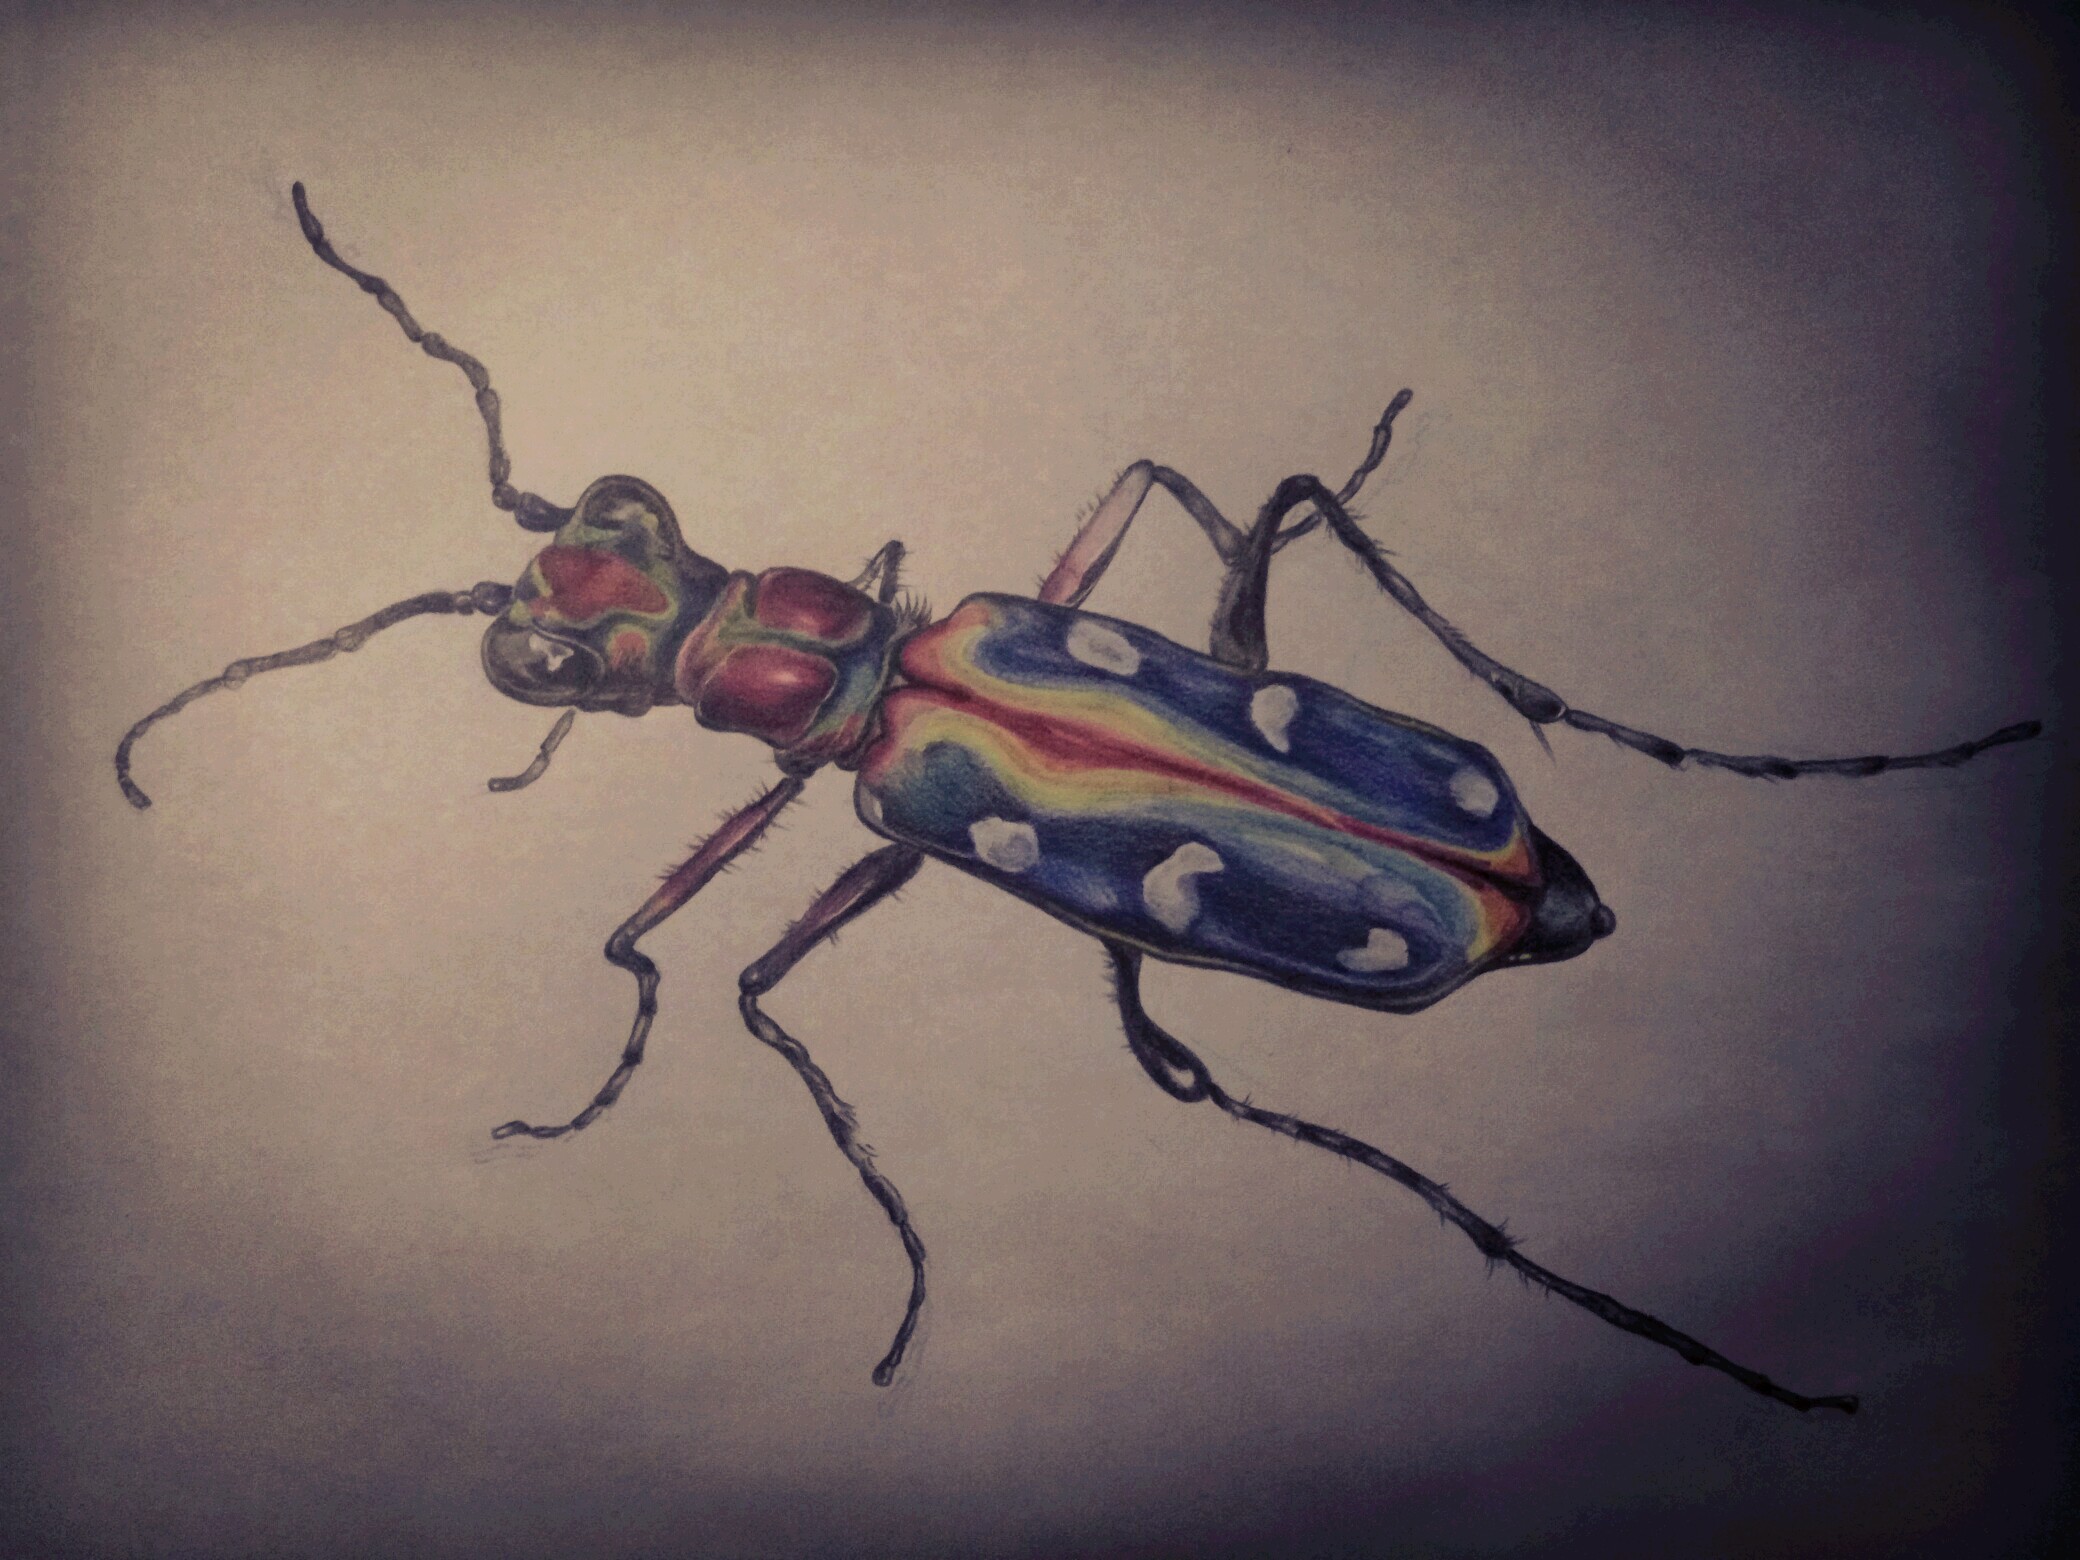 虎甲虫简笔画图片